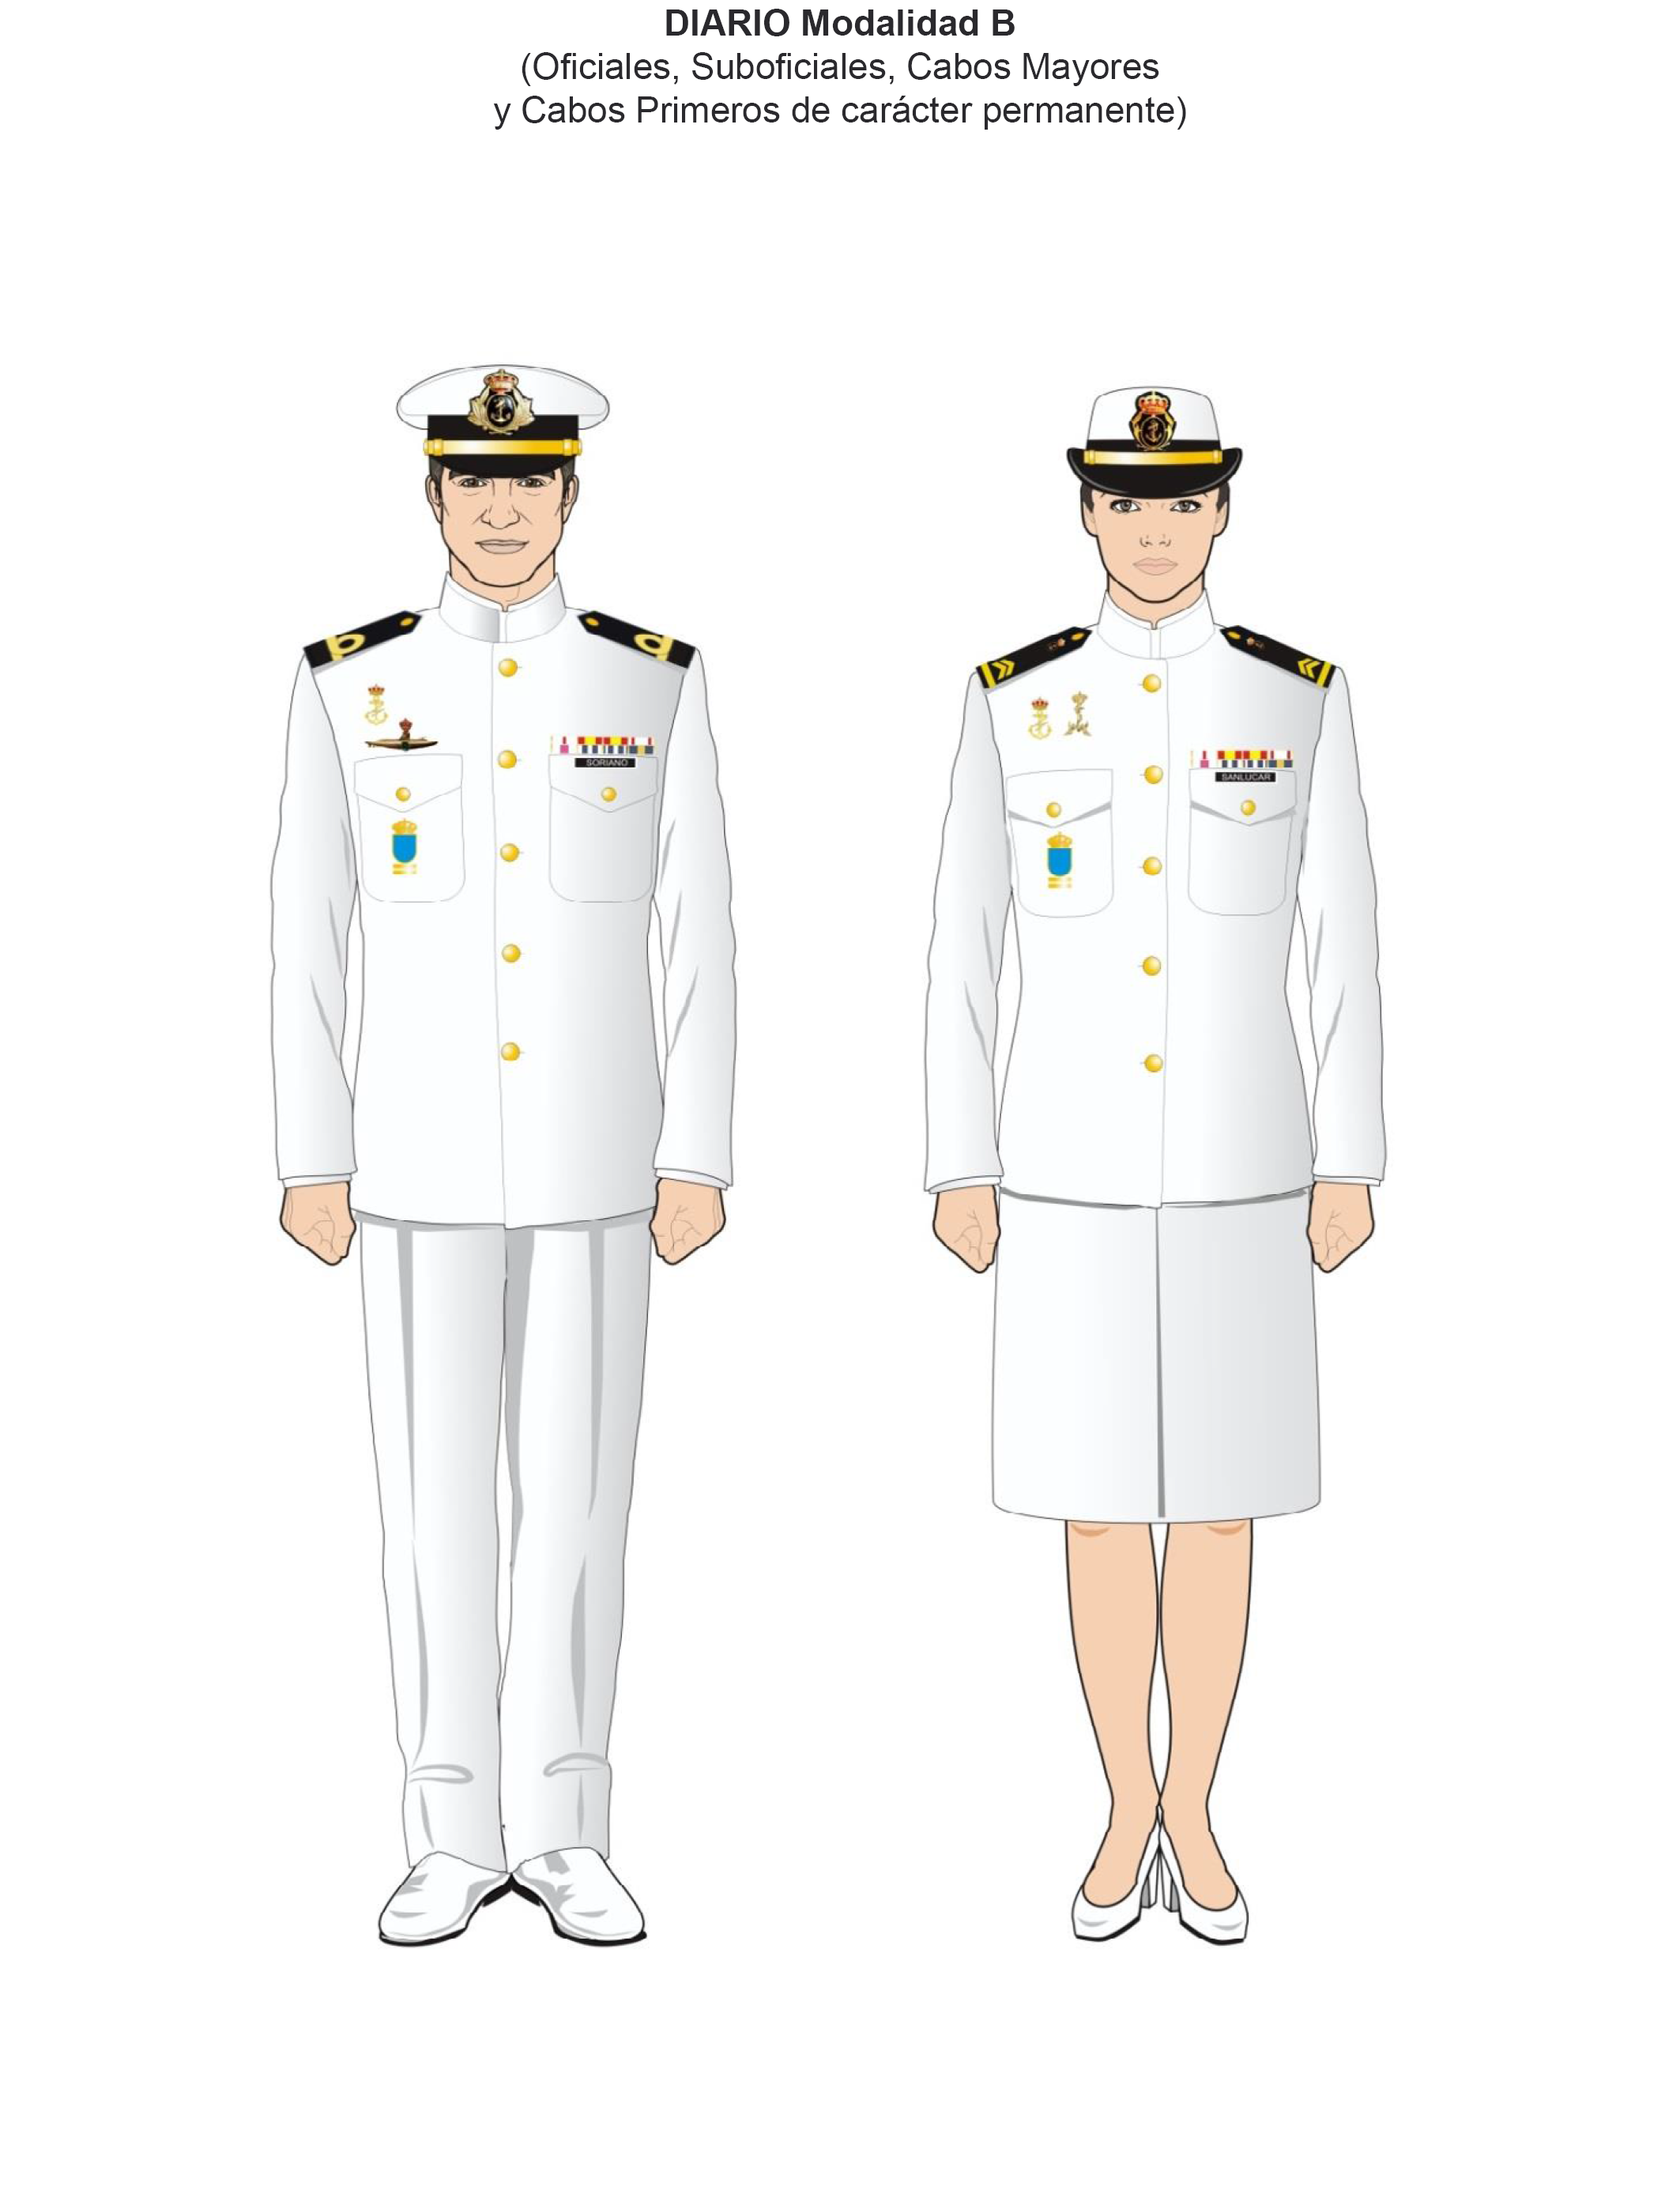 BOE-A-2016-10303 Orden DEF/1756/2016, de 28 de octubre, por la que se  aprueban las normas de uniformidad de las Fuerzas Armadas.